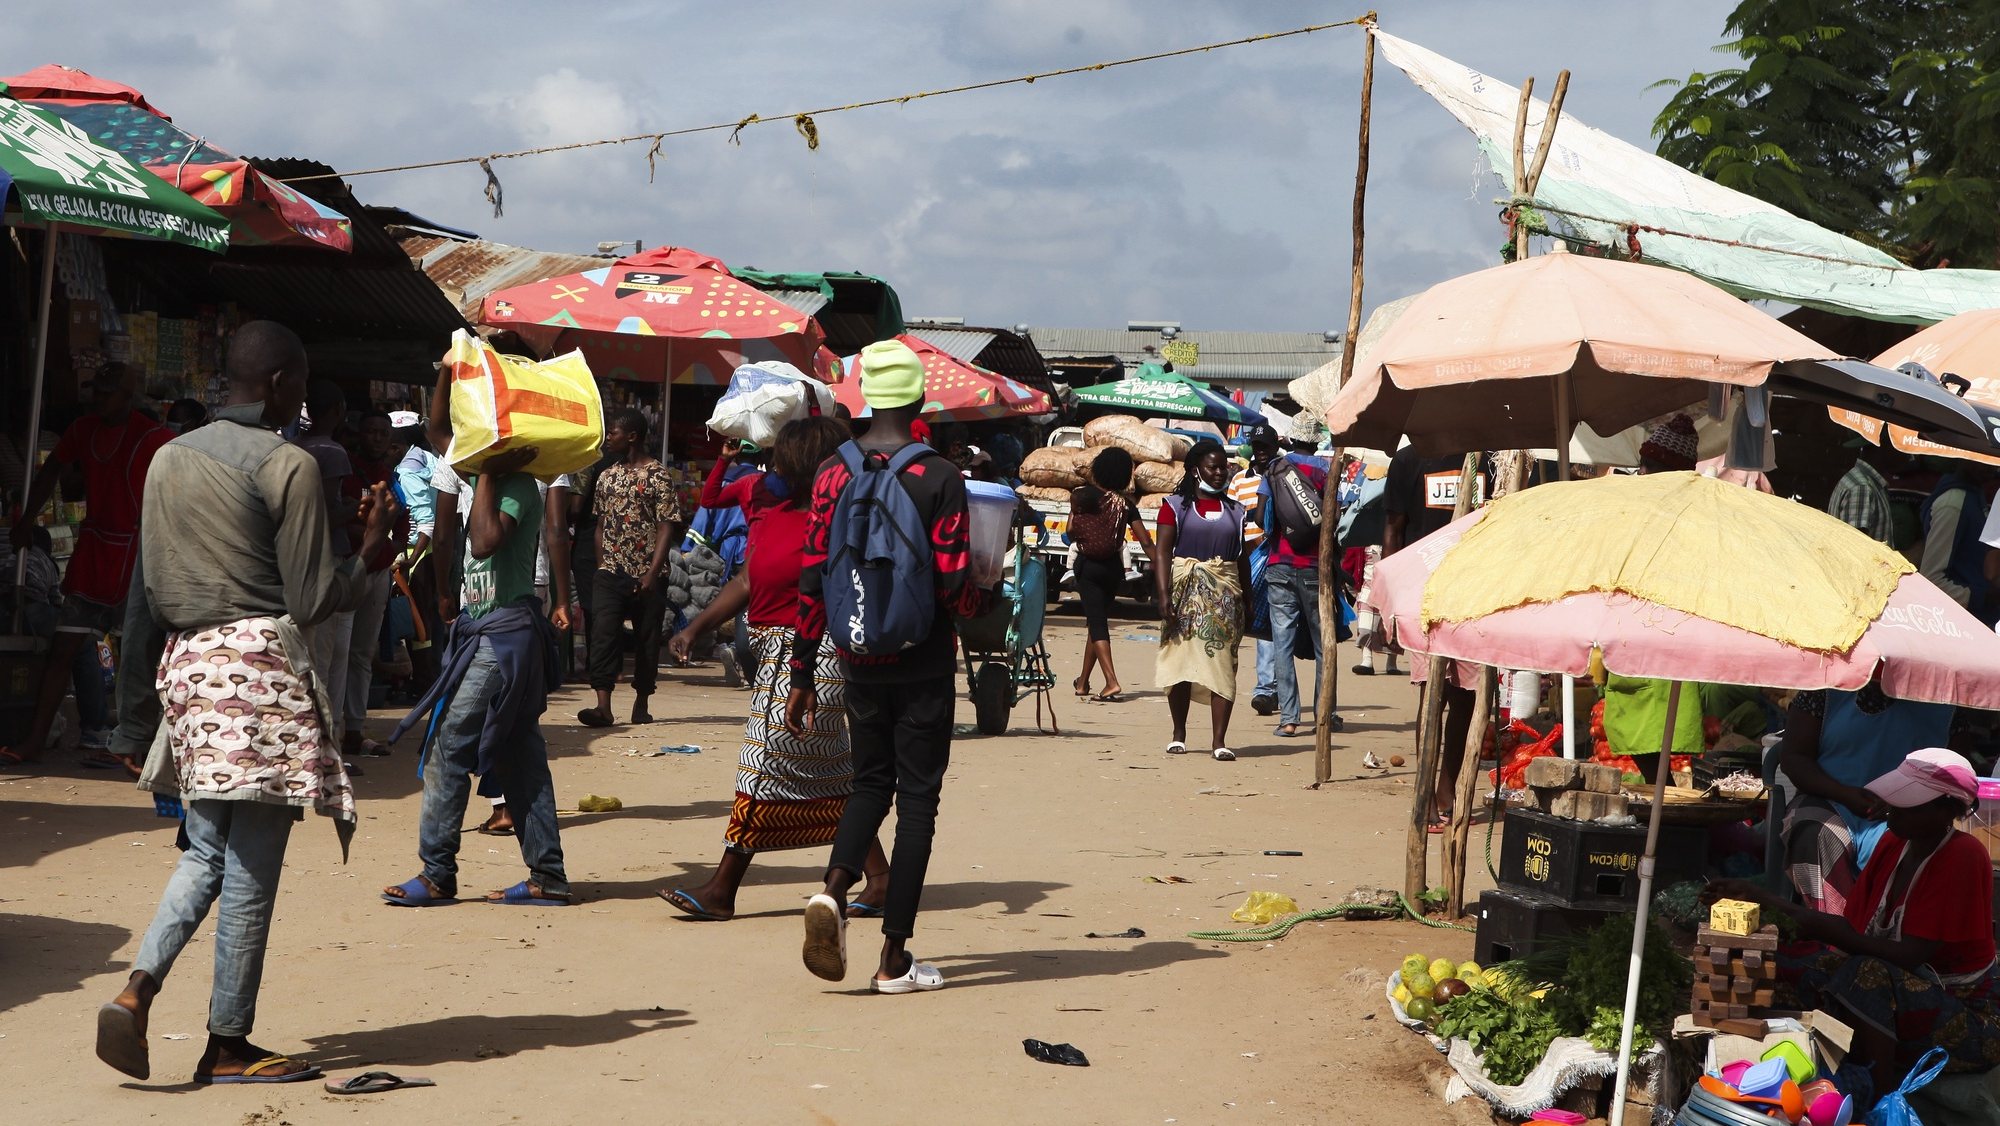 Mercado grossista do Zimpeto, em Maputo, Moçambique, 25 de abril de 2022. Famílias de Maputo já levam menos compras para casa e começam a mudar de hábitos alimentares, como deixar a comida do jantar para o pequeno-almoço do dia seguinte, sem pão, devido à subida de preços na capital. LUÍSA NHANTUMBO/LUSA